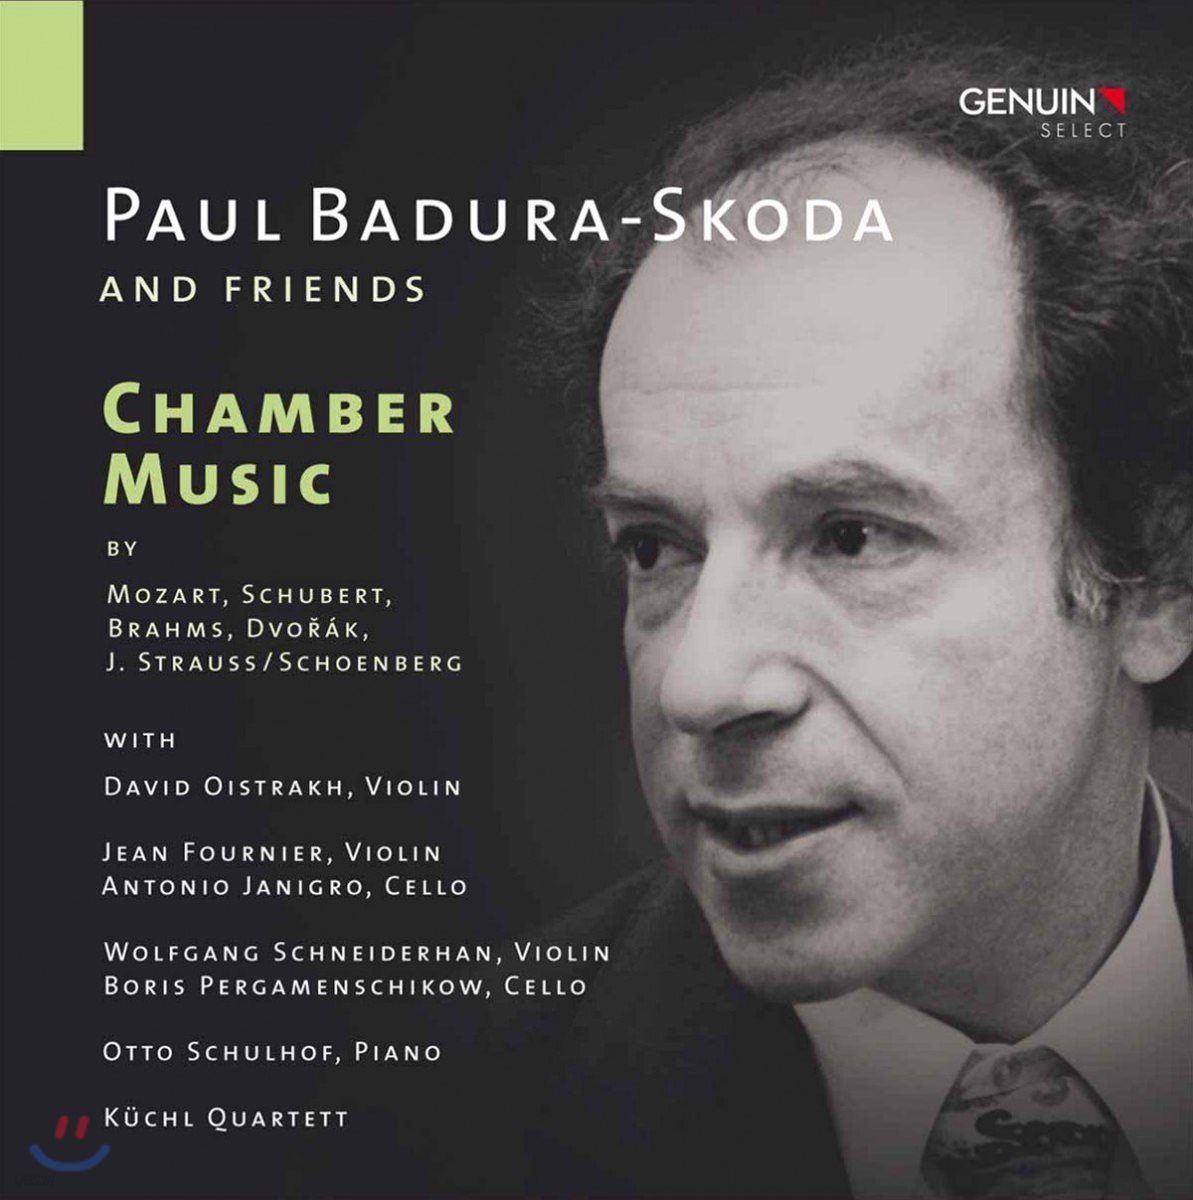 Paul Badura-Skoda 파울 바두라-스코다와 친구들 - 모차르트 / 슈베르트 / 브람스: 실내악곡집 (Badura-Skoda & Friends - Mozart / Schubert: Chamber Music)